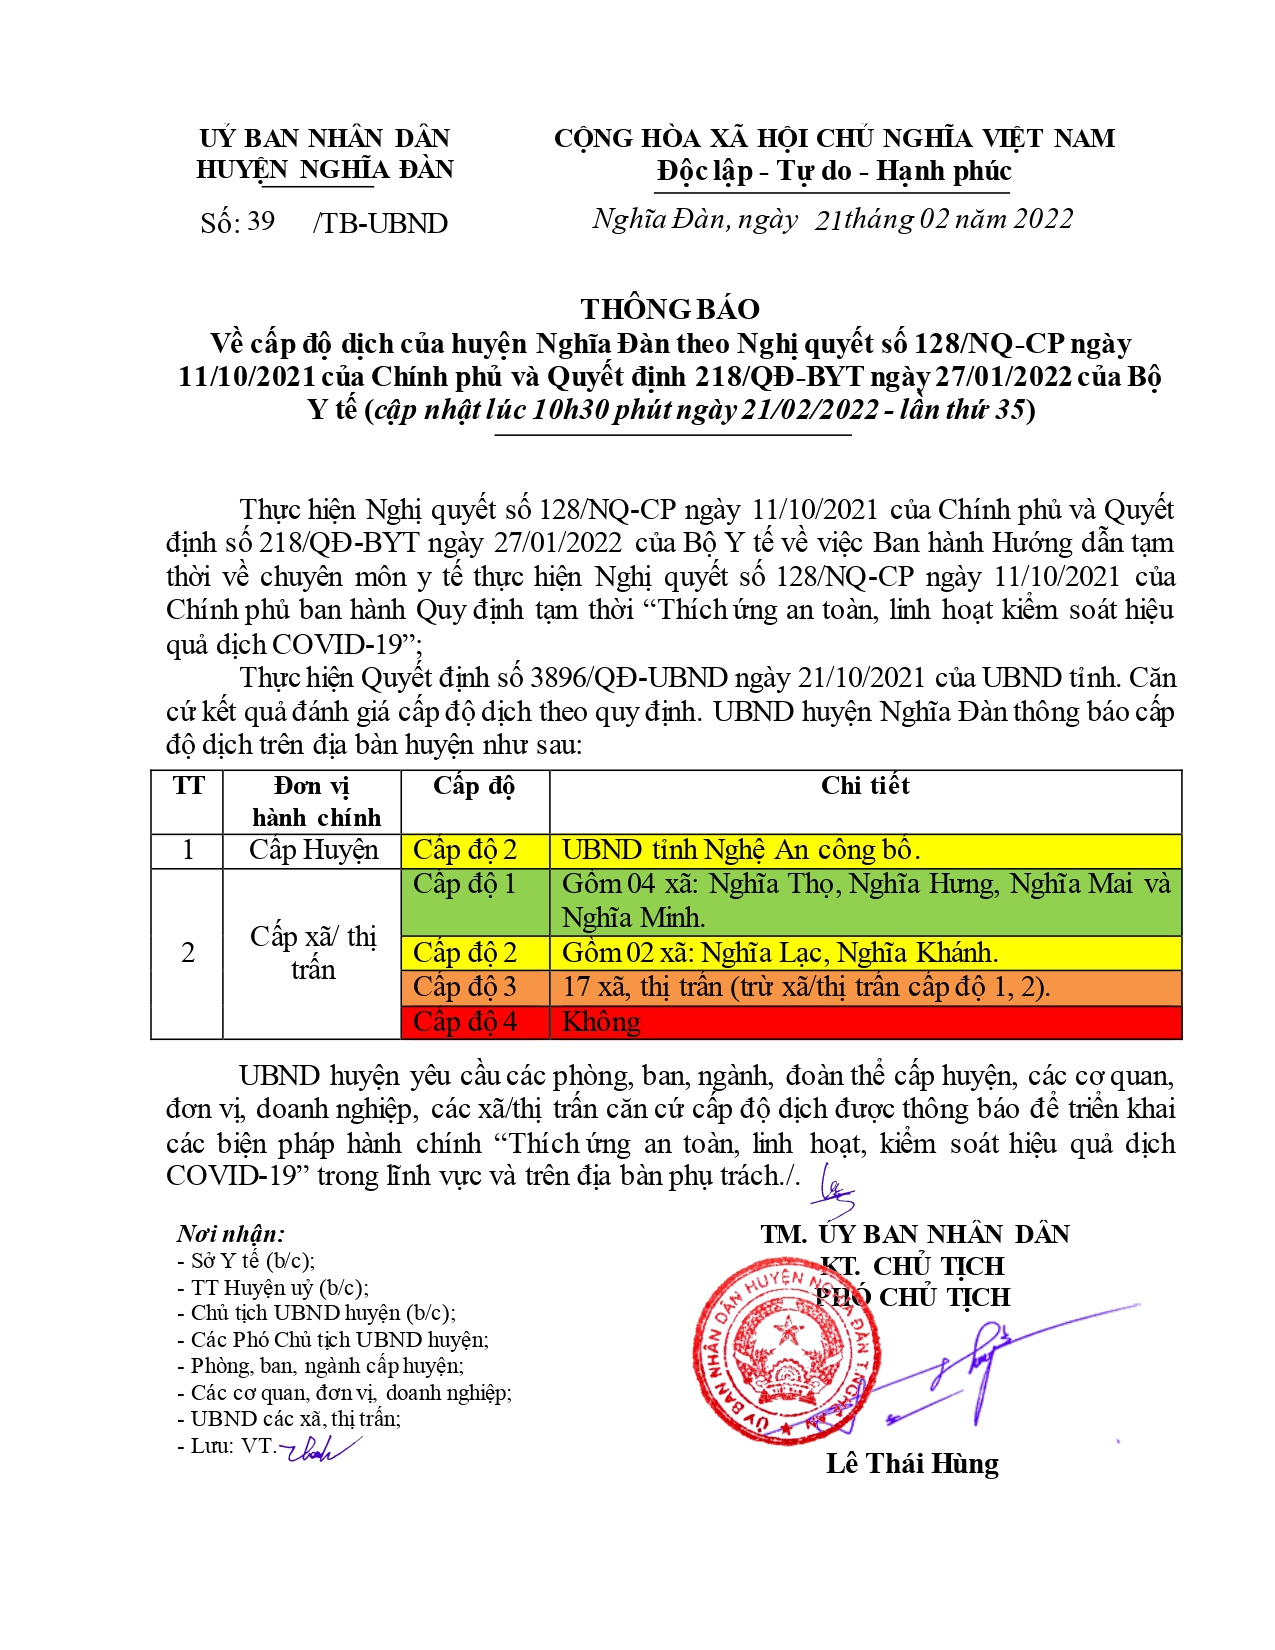 Thông báo cấp độ dịch của huyện Nghĩa Đàn ngày 21/2/2022